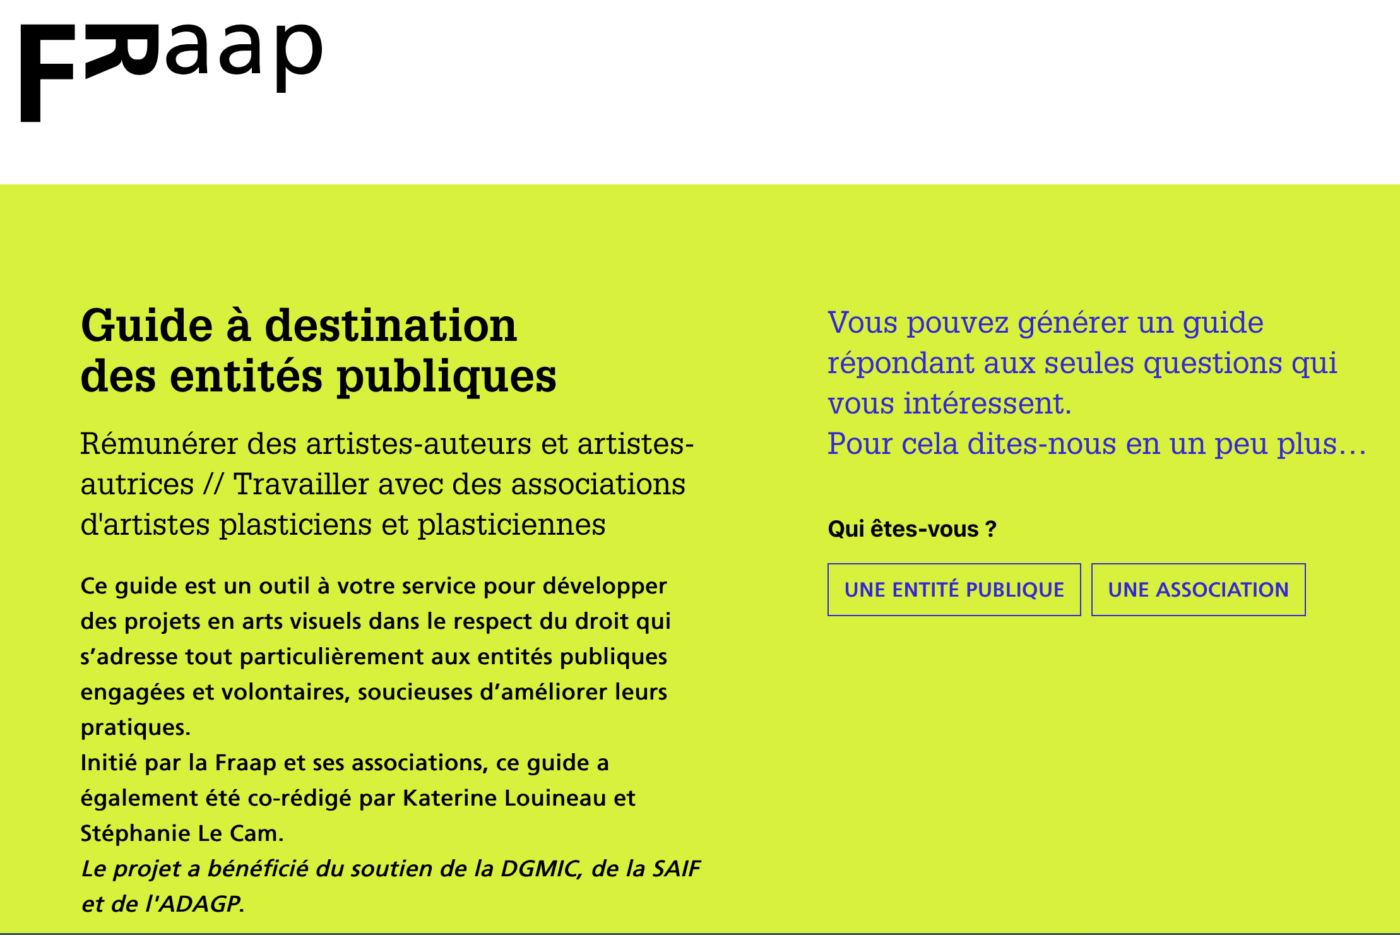 Présentation du guide interactif destiné aux entités publiques – FRAAP — Pôle Arts Visuels Pays de la Loire